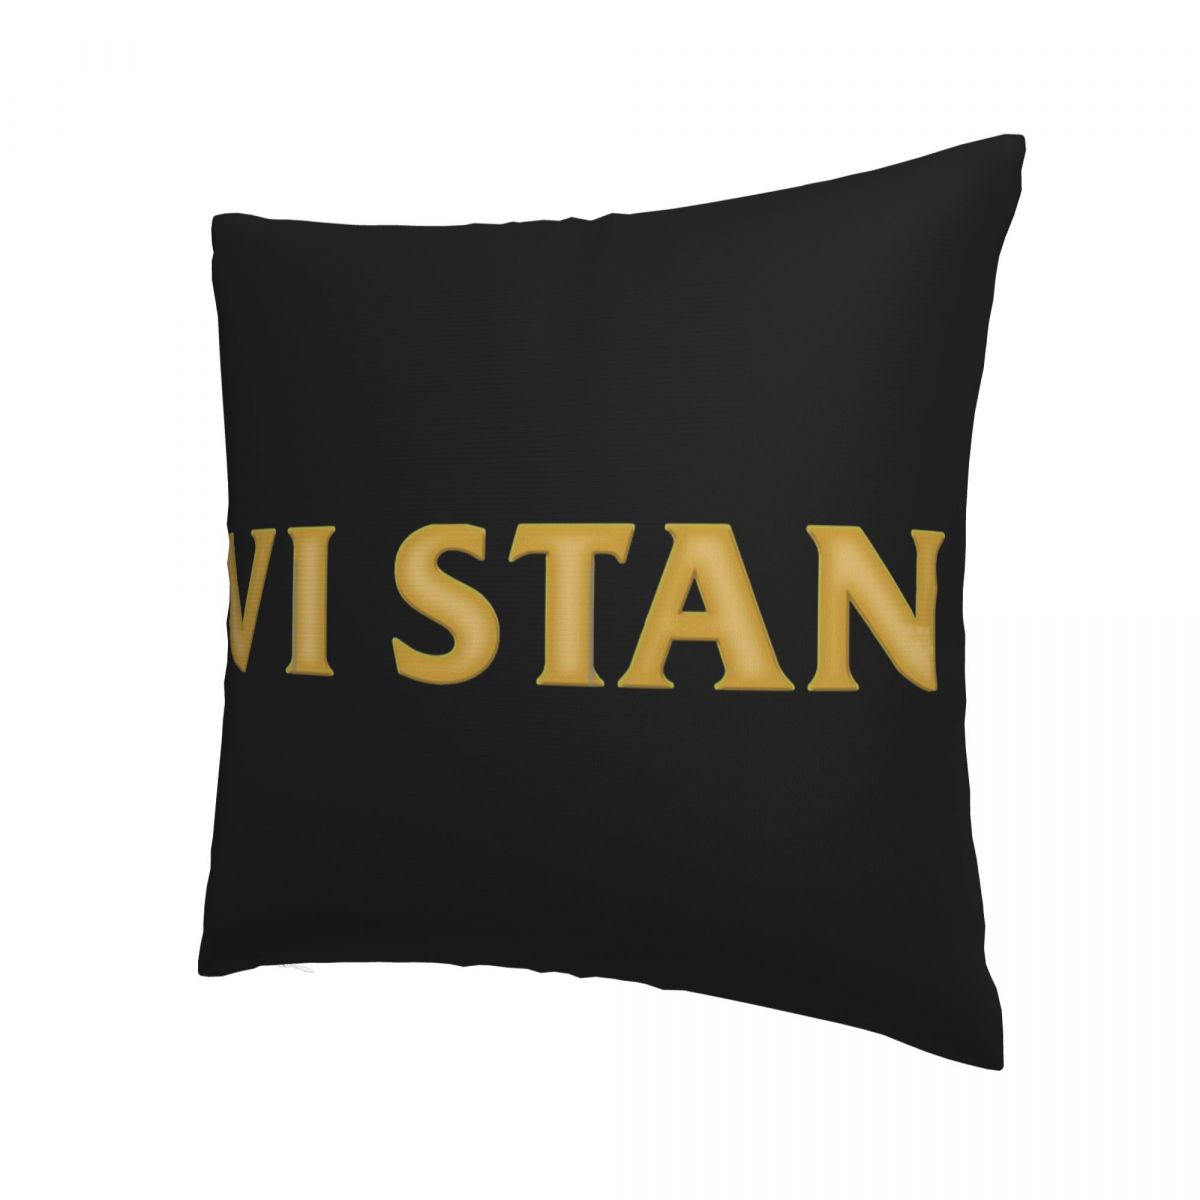 Vi Stan Pillowcase Arcane - League of Legends Fan Store